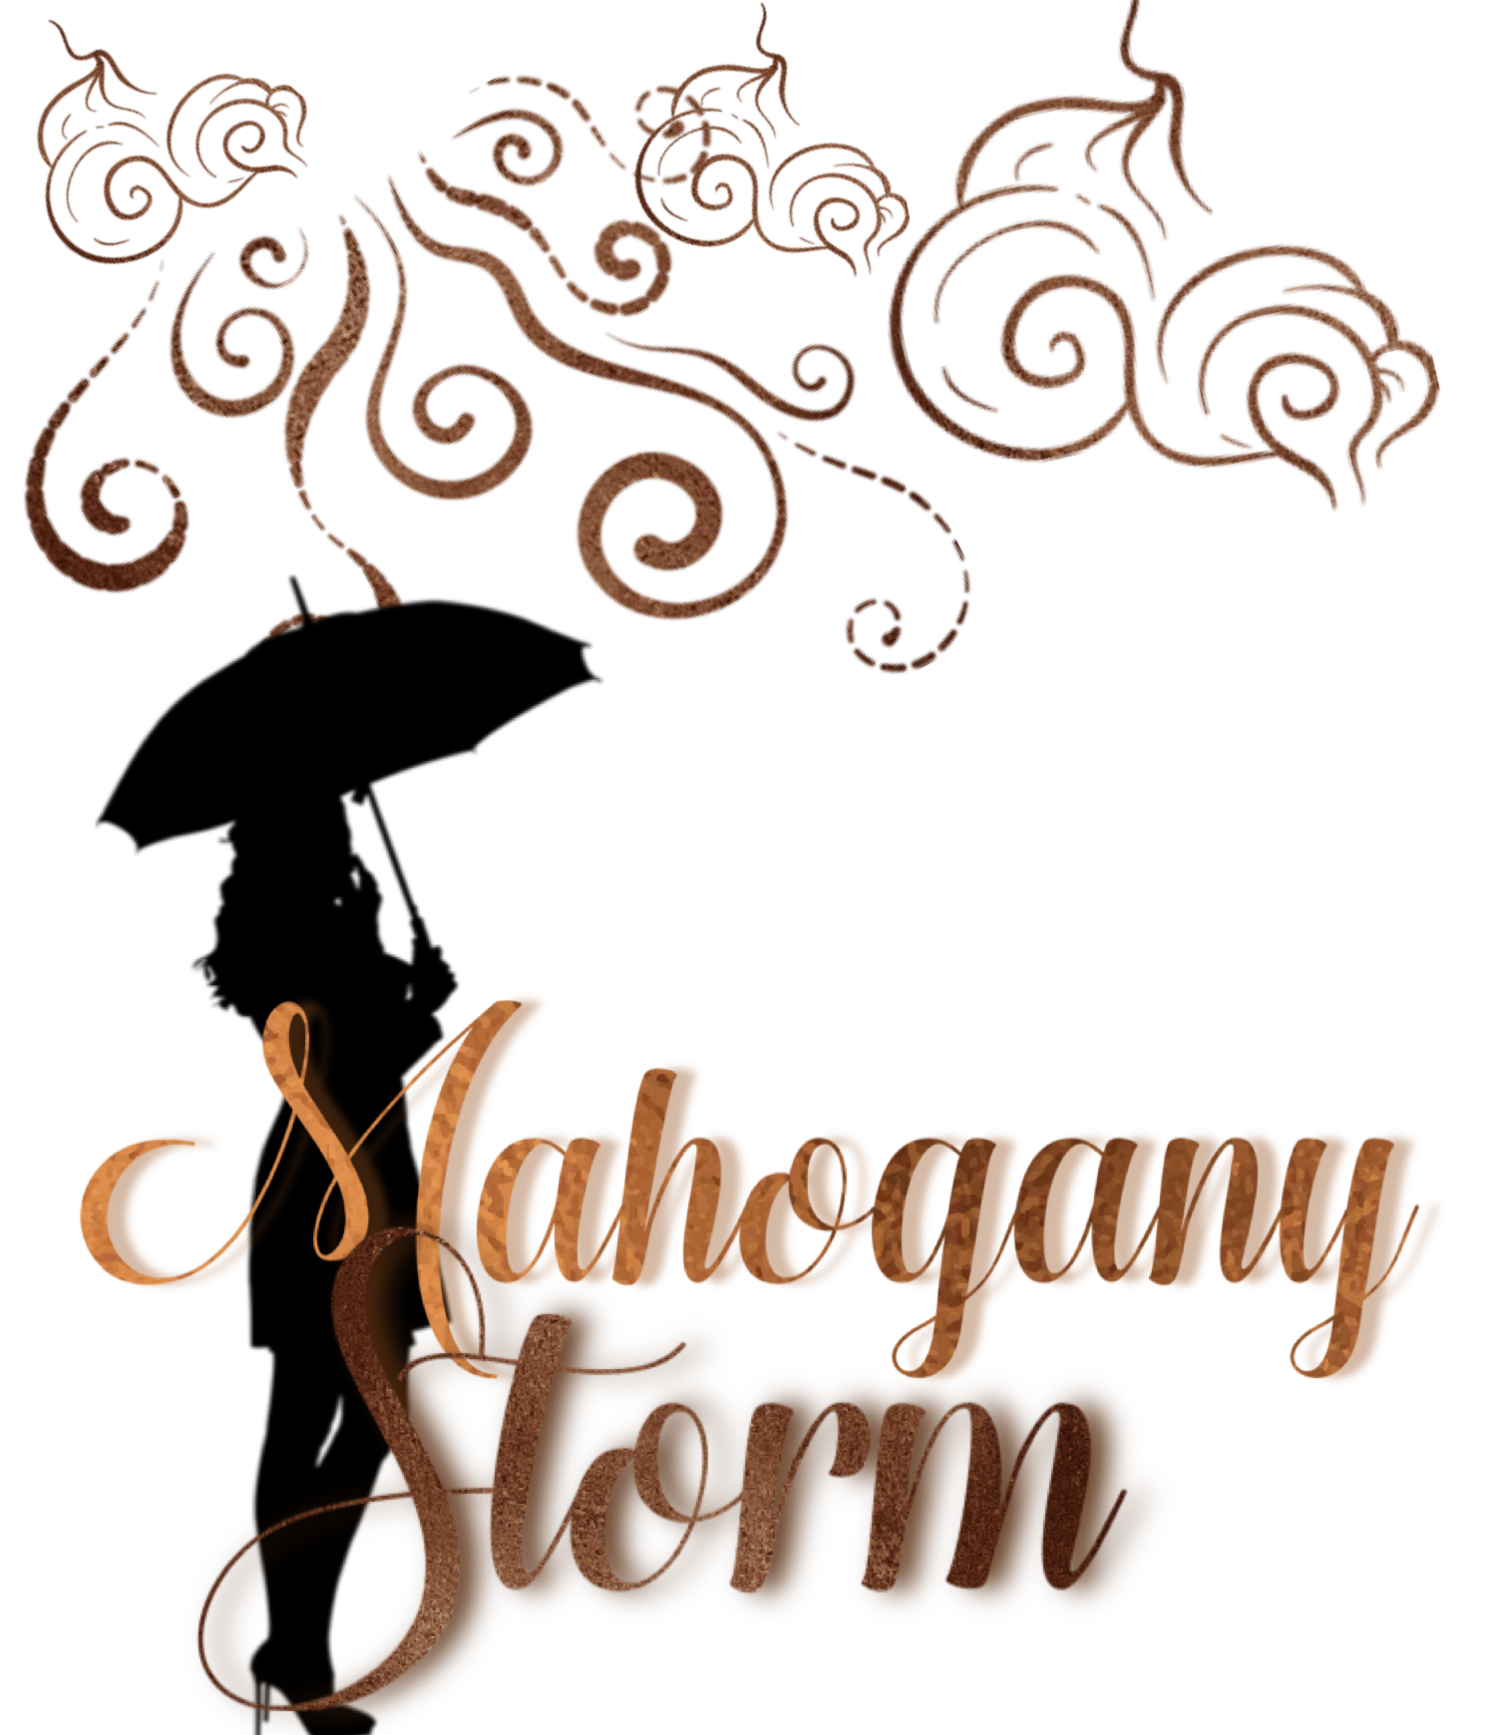 Mahogany Storm